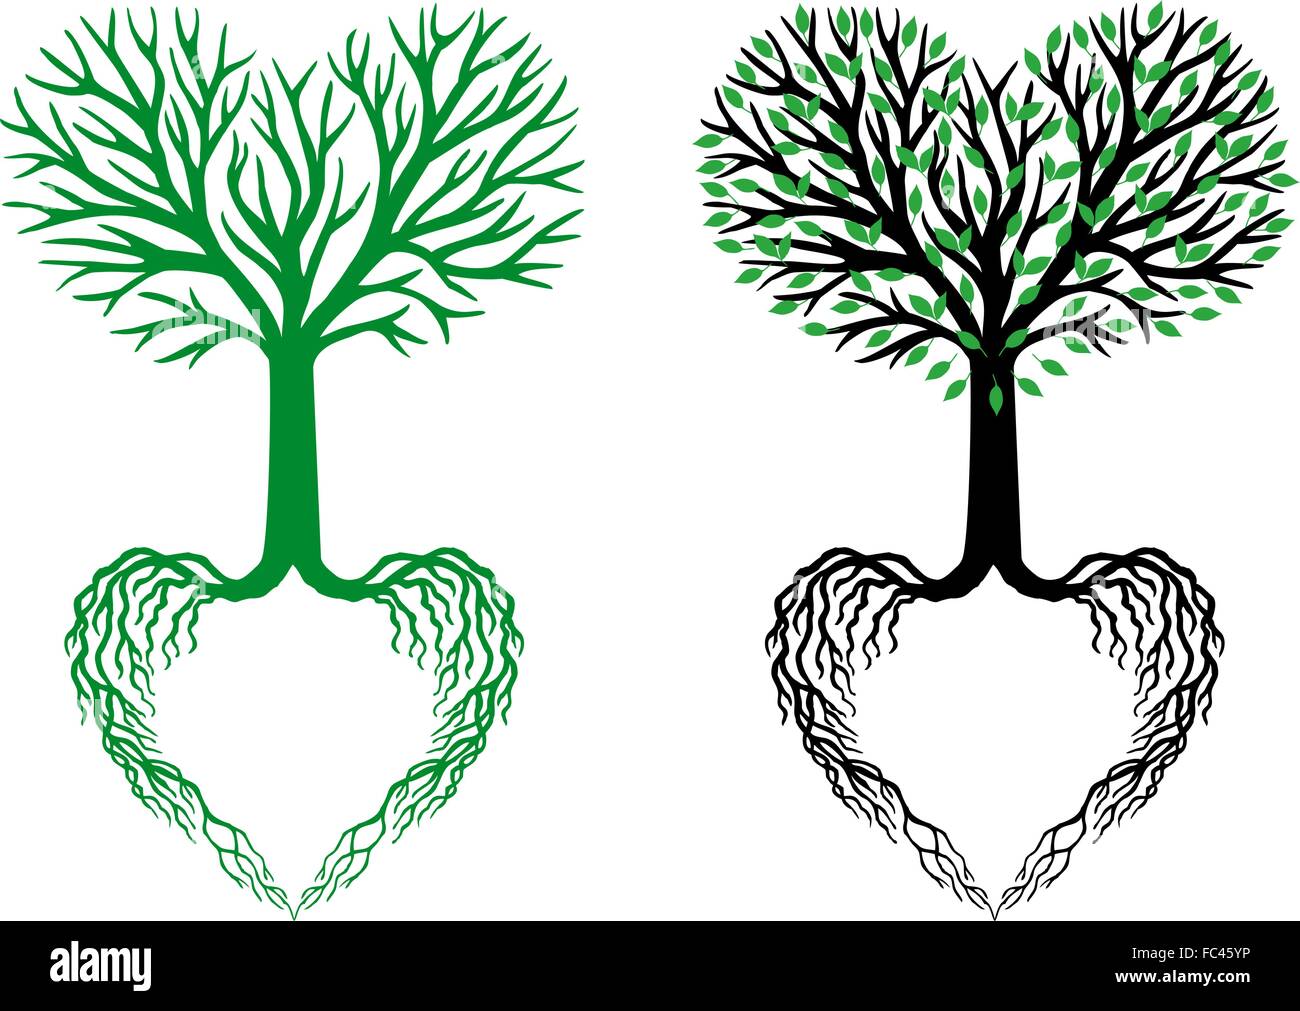 Baum des Lebens, Herz geformt, Äste und Wurzeln, Vektor-illustration Stock Vektor